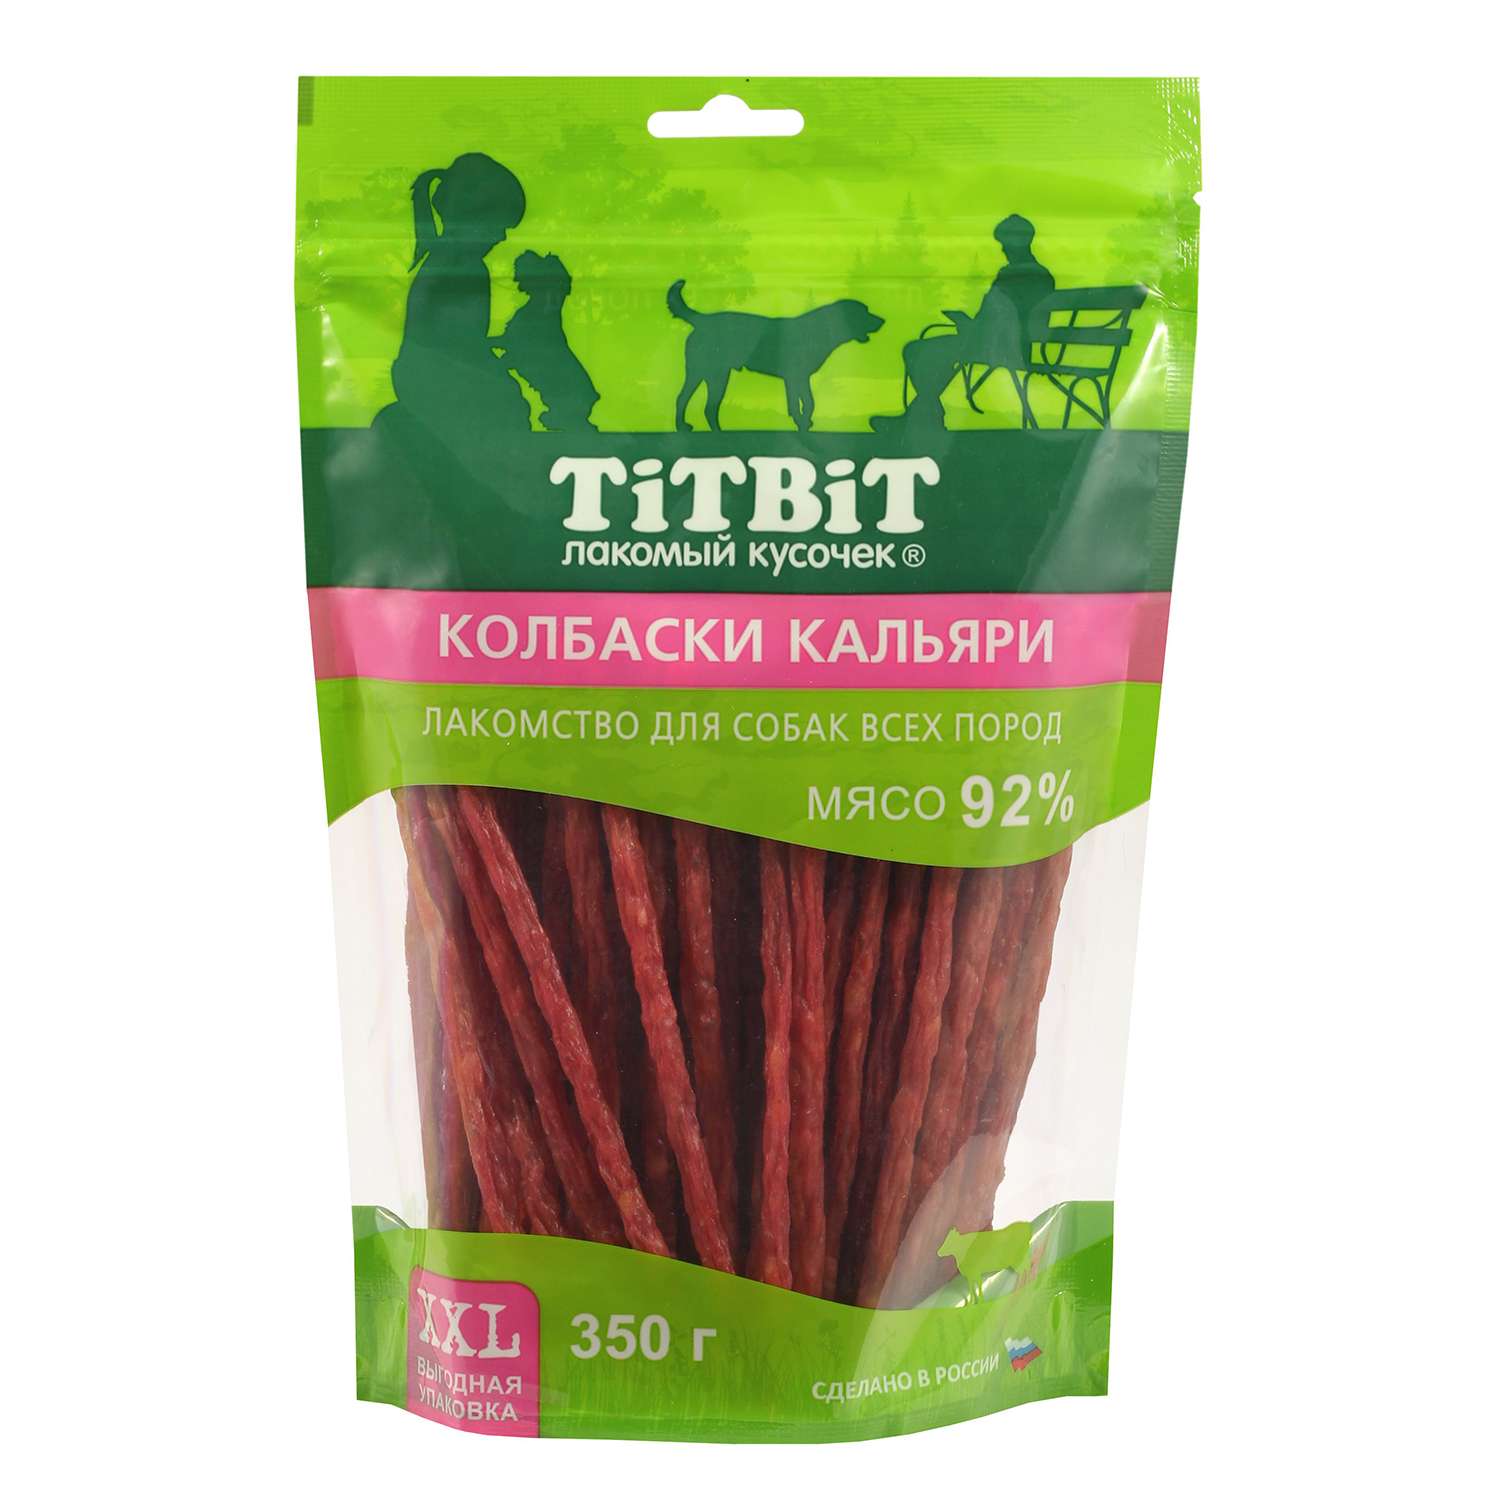 Лакомство для собак Titbit 350г всех пород колбаски Кальяри - XXL выгодная упаковка - фото 1